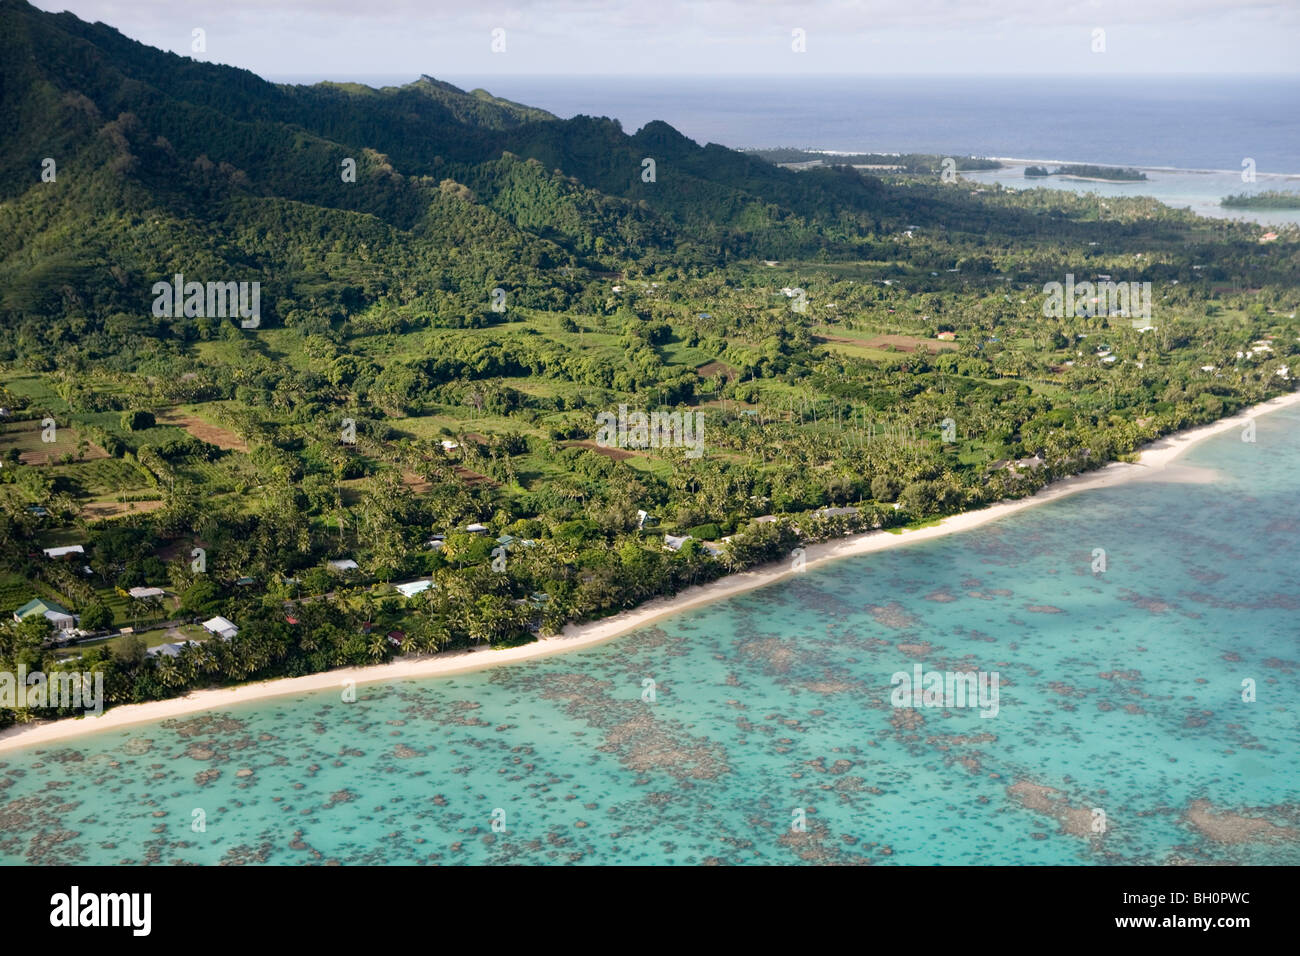 Vista aerea della spiaggia e della costa dell'isola di Rarotonga Isole Cook, South Pacific Oceania Foto Stock